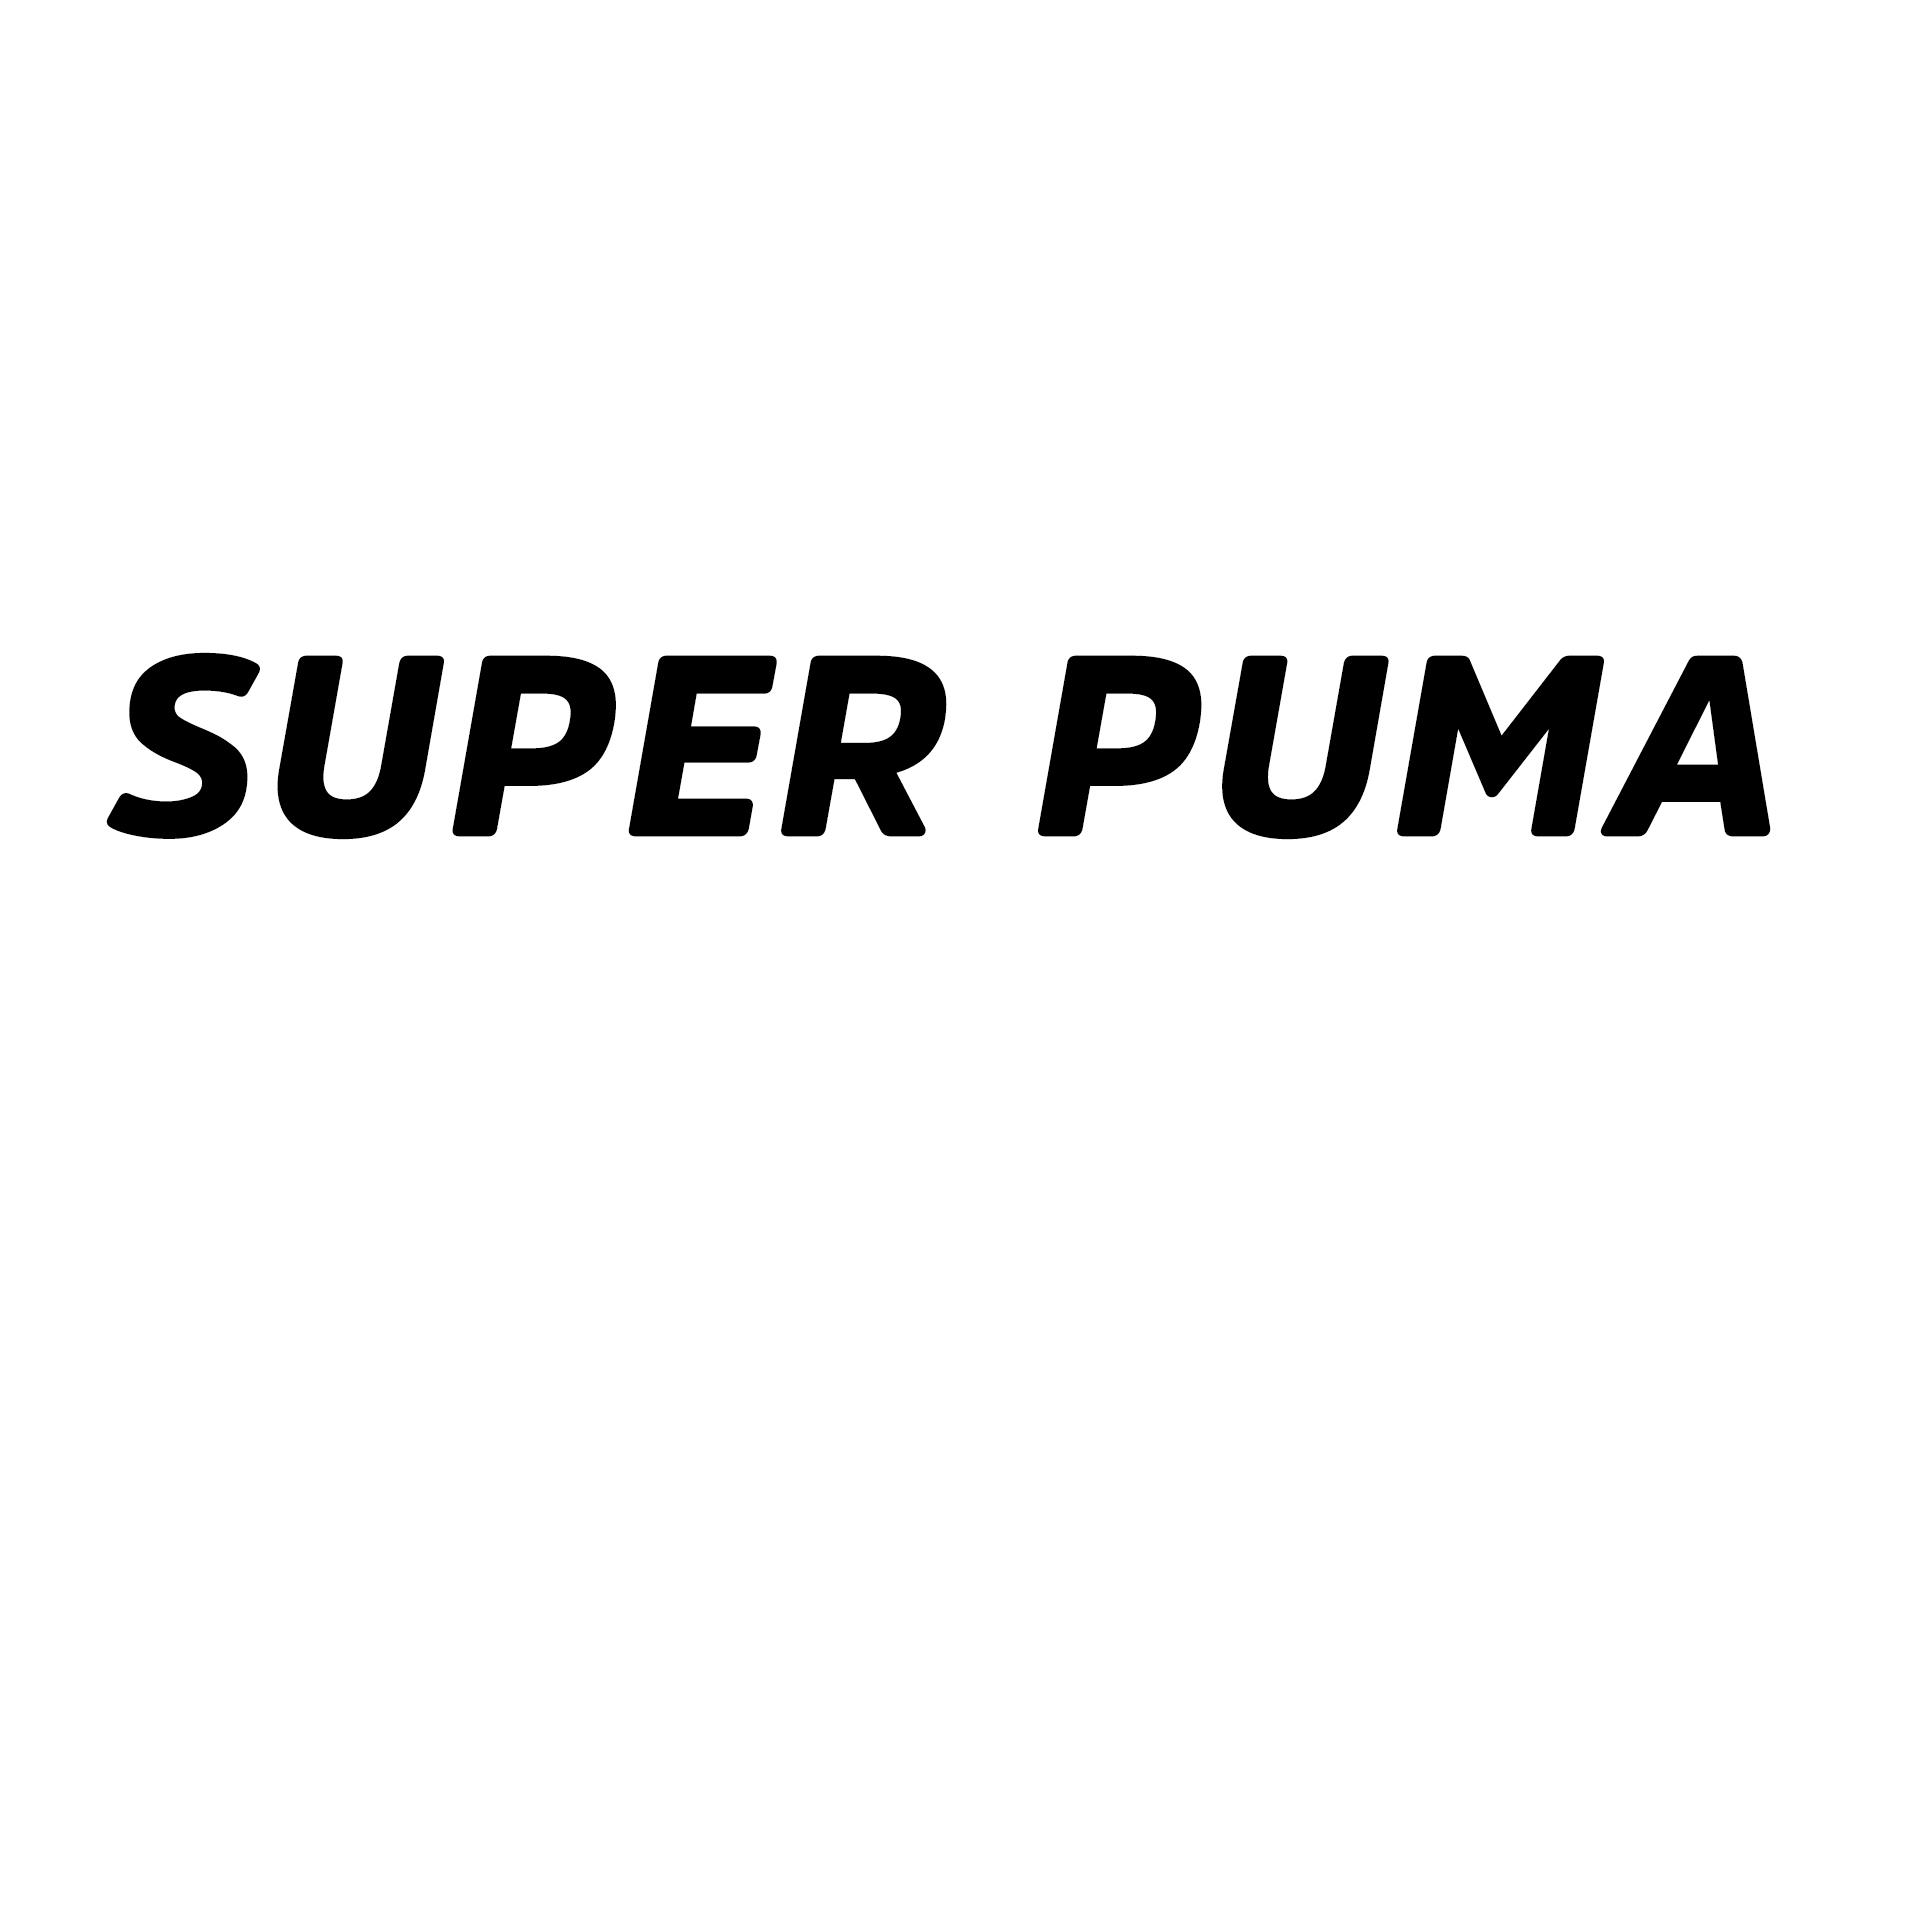 SUPER PUMA